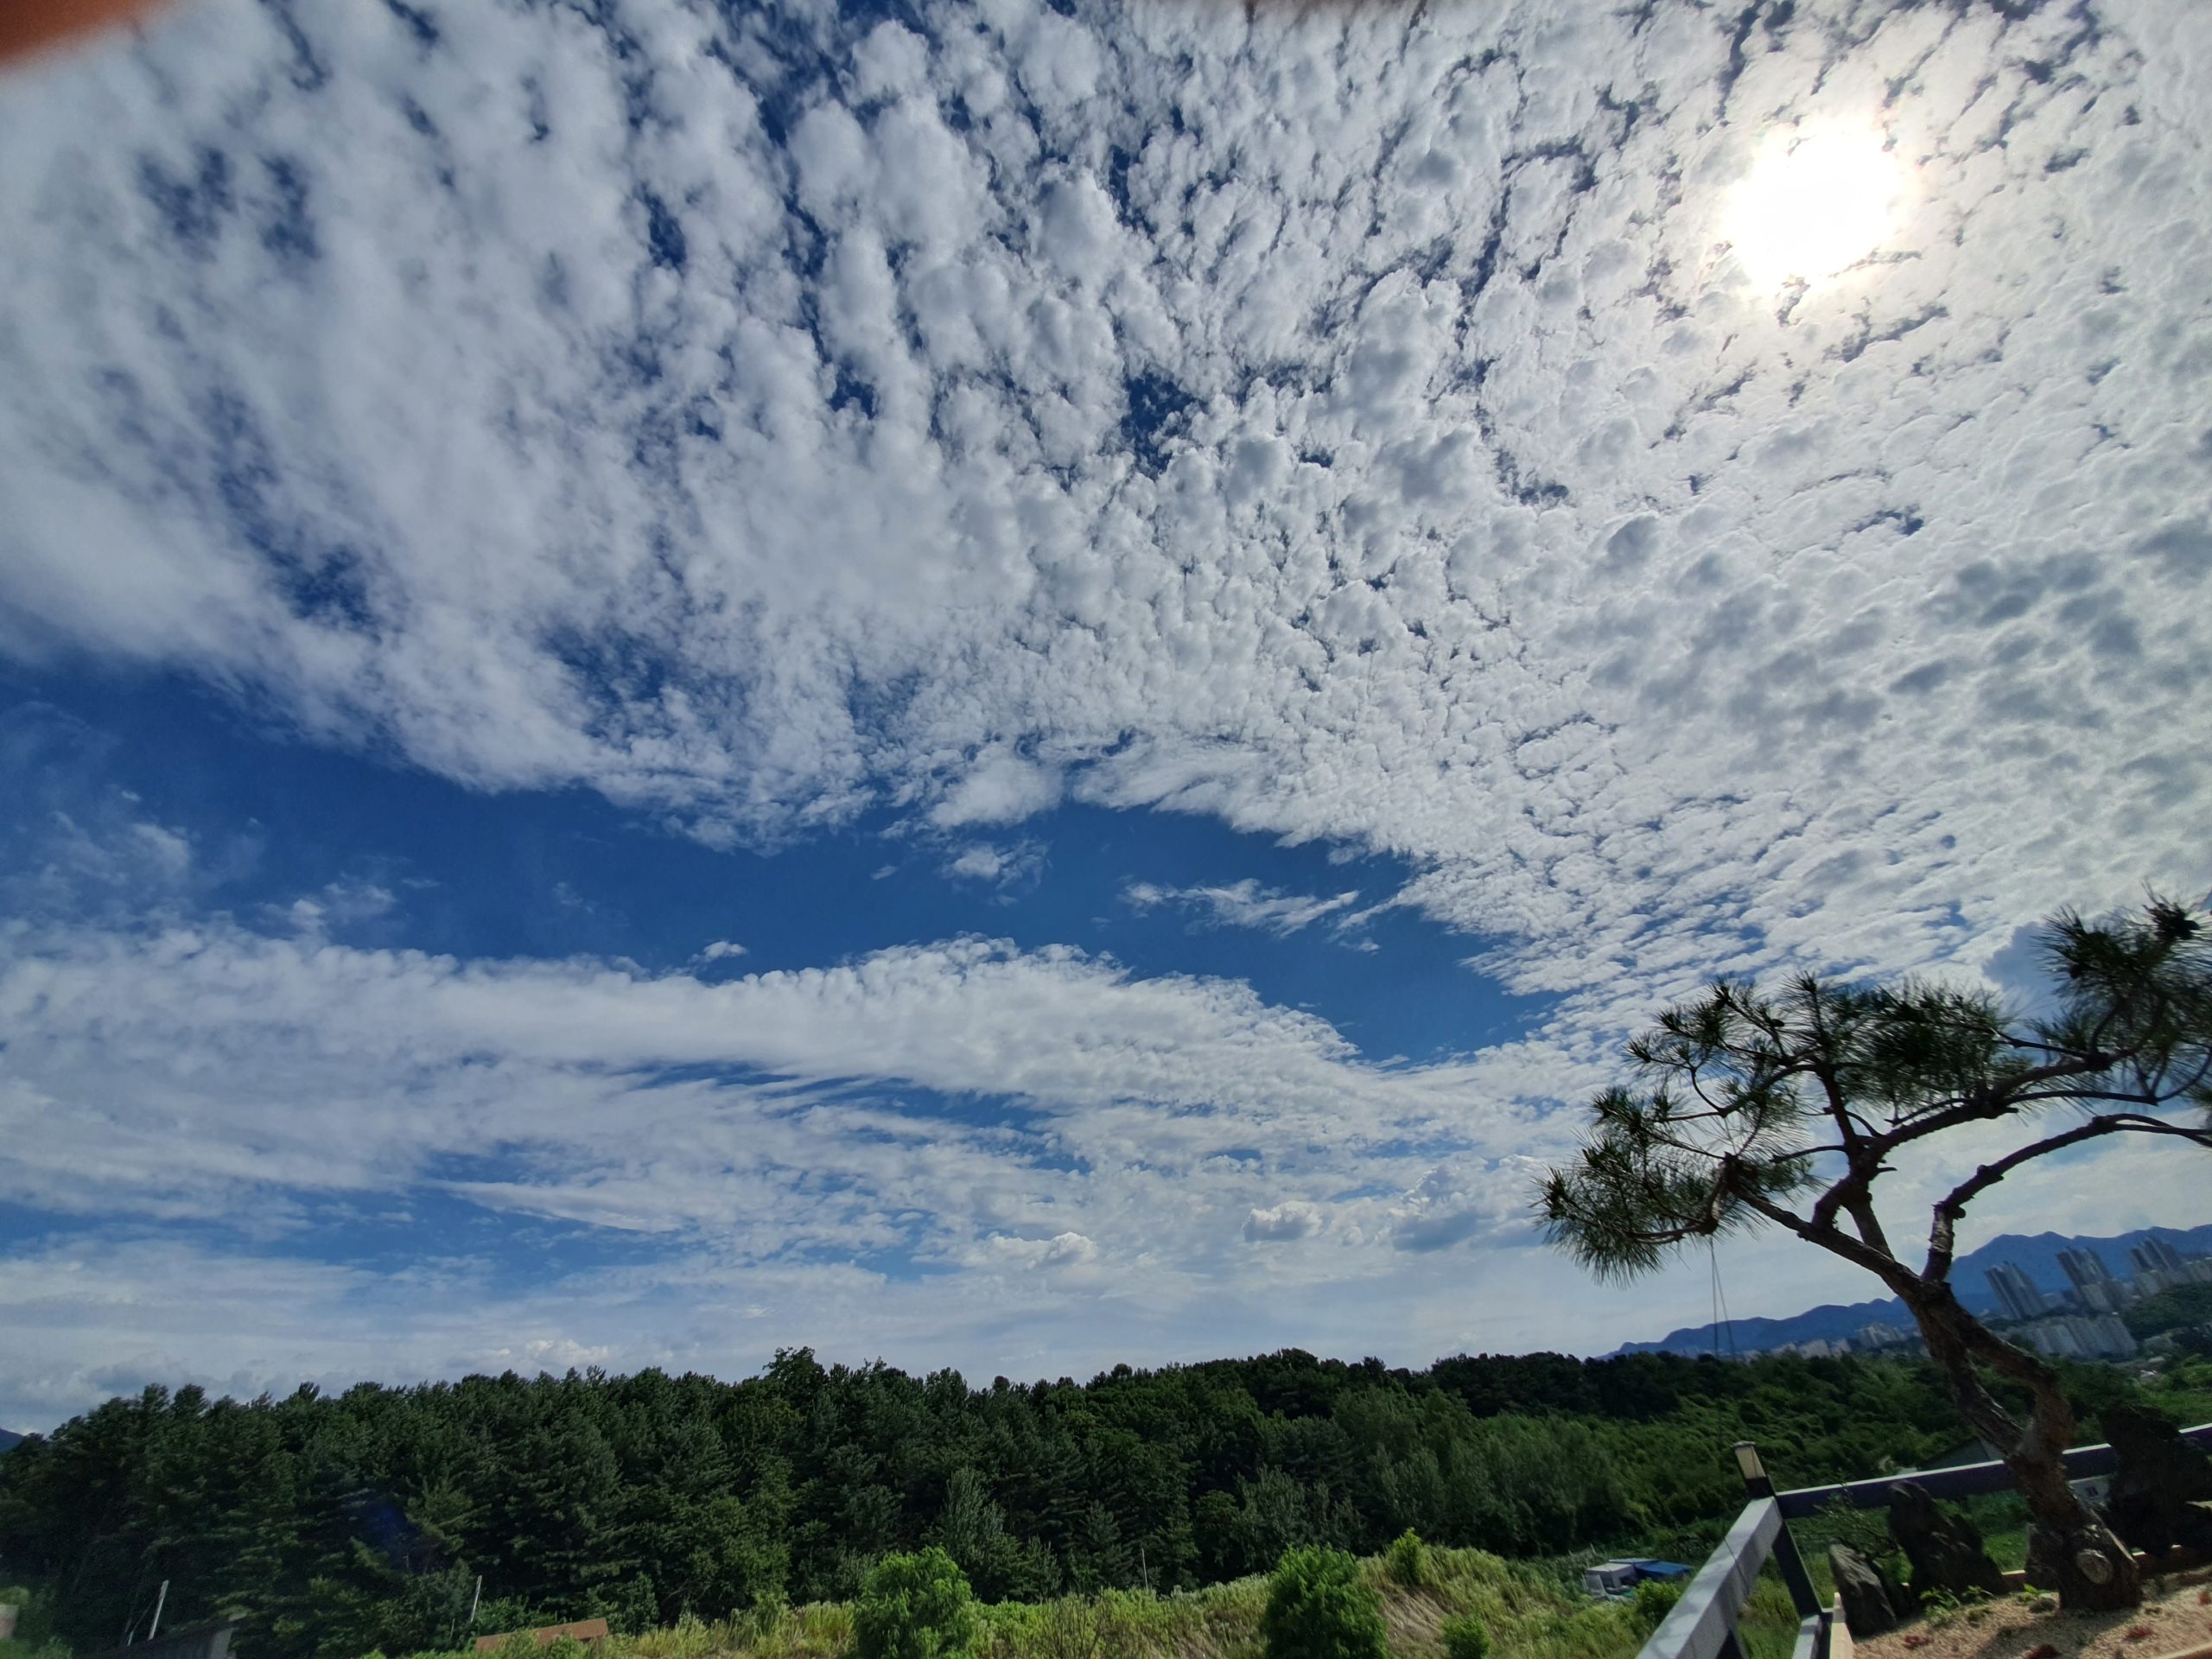 푸른 하늘에 흰 구름 펼쳐진 시골 전경.